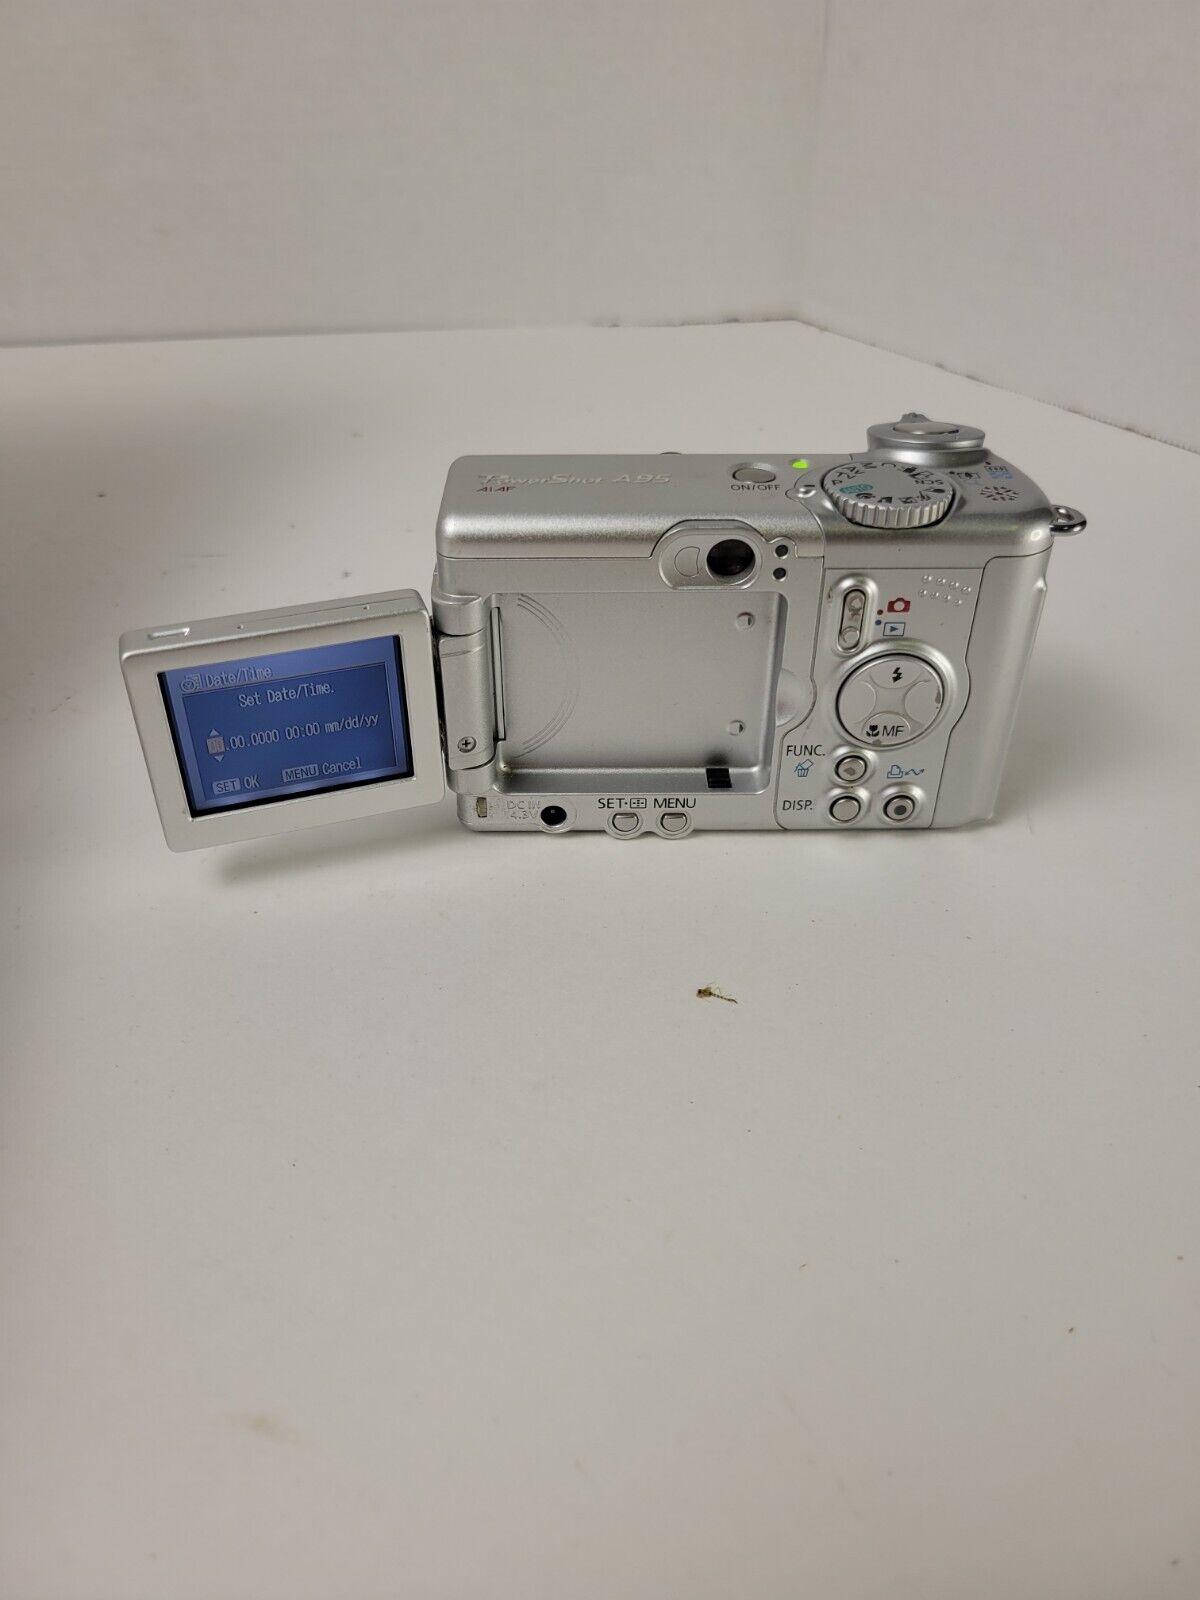 Vintage Canon PowerShot A95 5.0MP Digital Camera - Silver CIB 